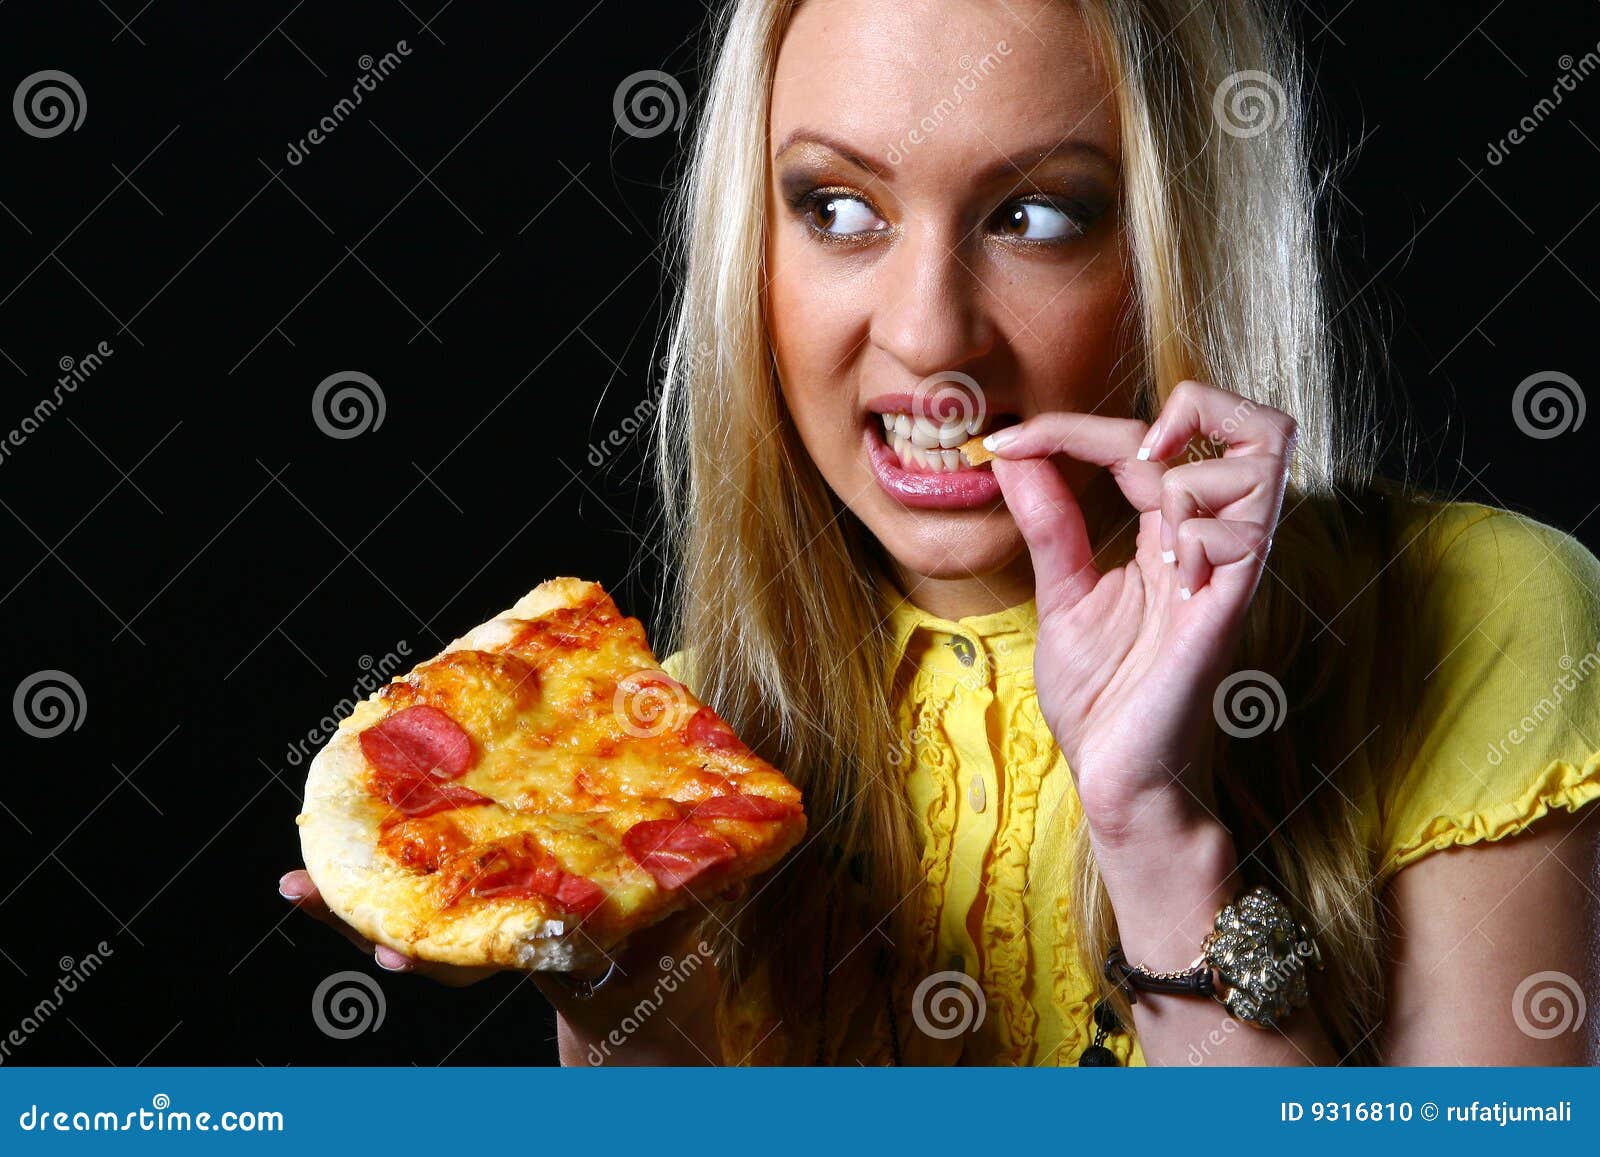 фотошоп из пиццы девушка фото 103